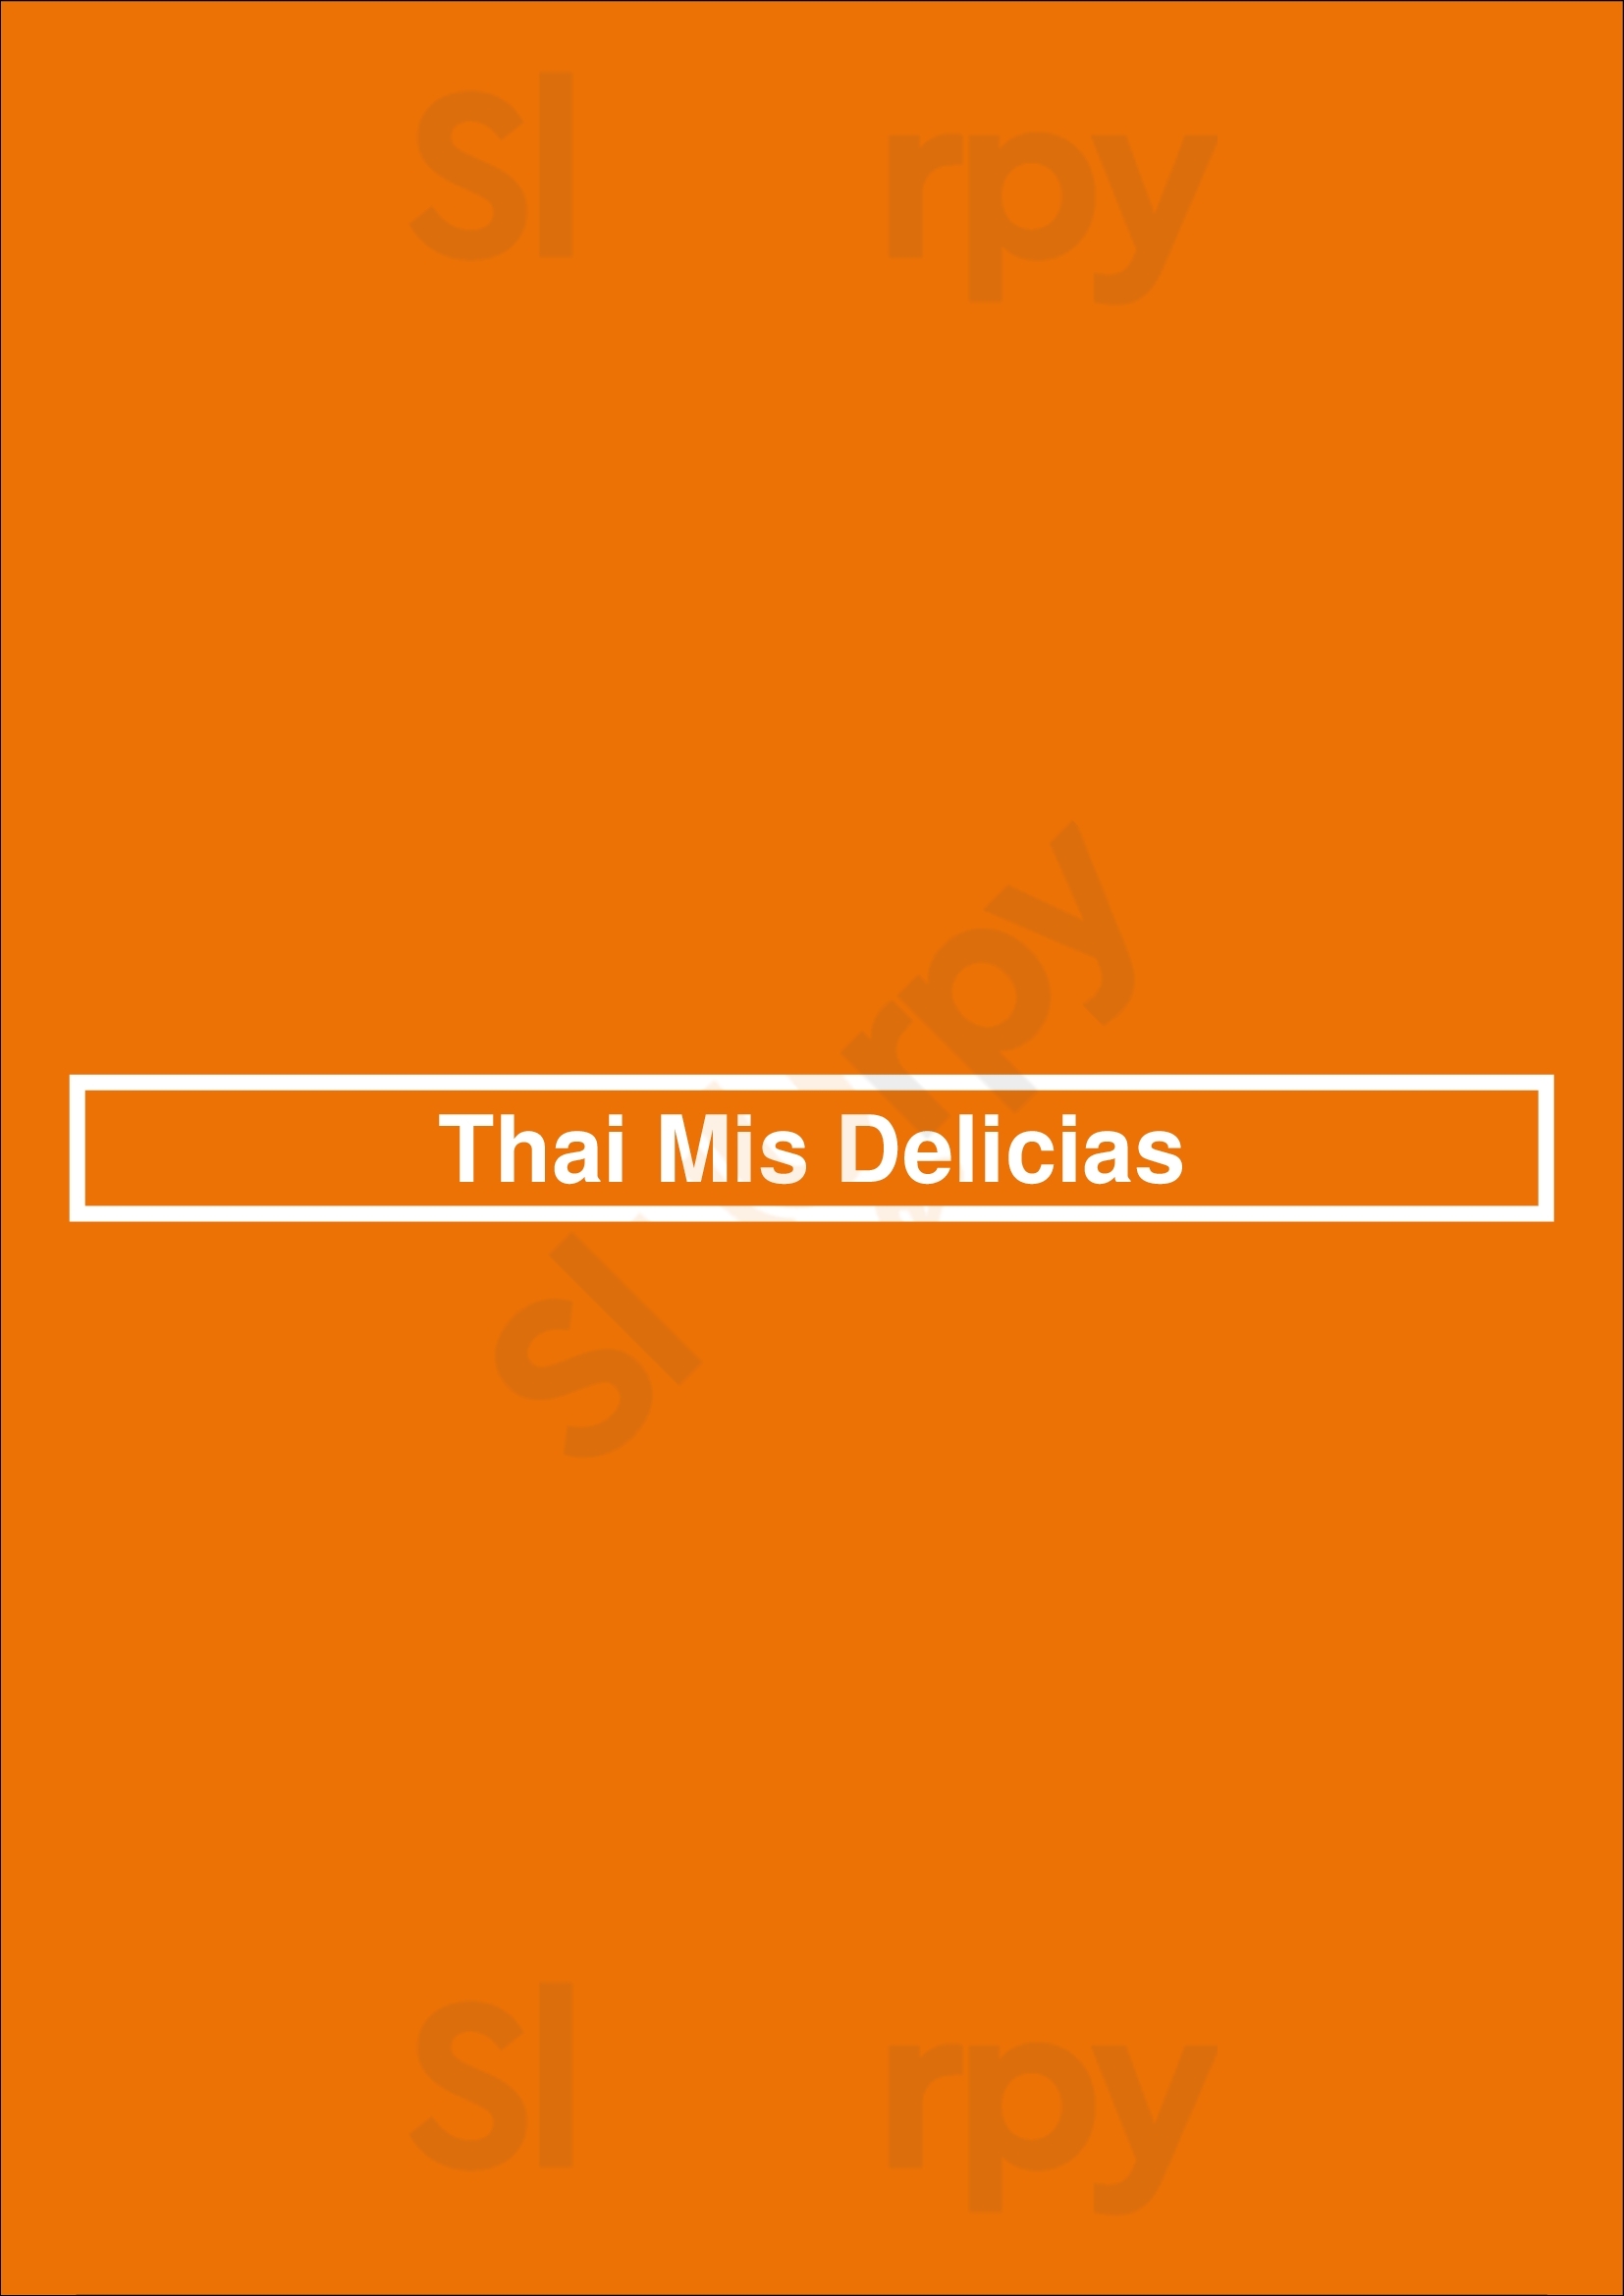 Thai Mis Delicias New York City Menu - 1